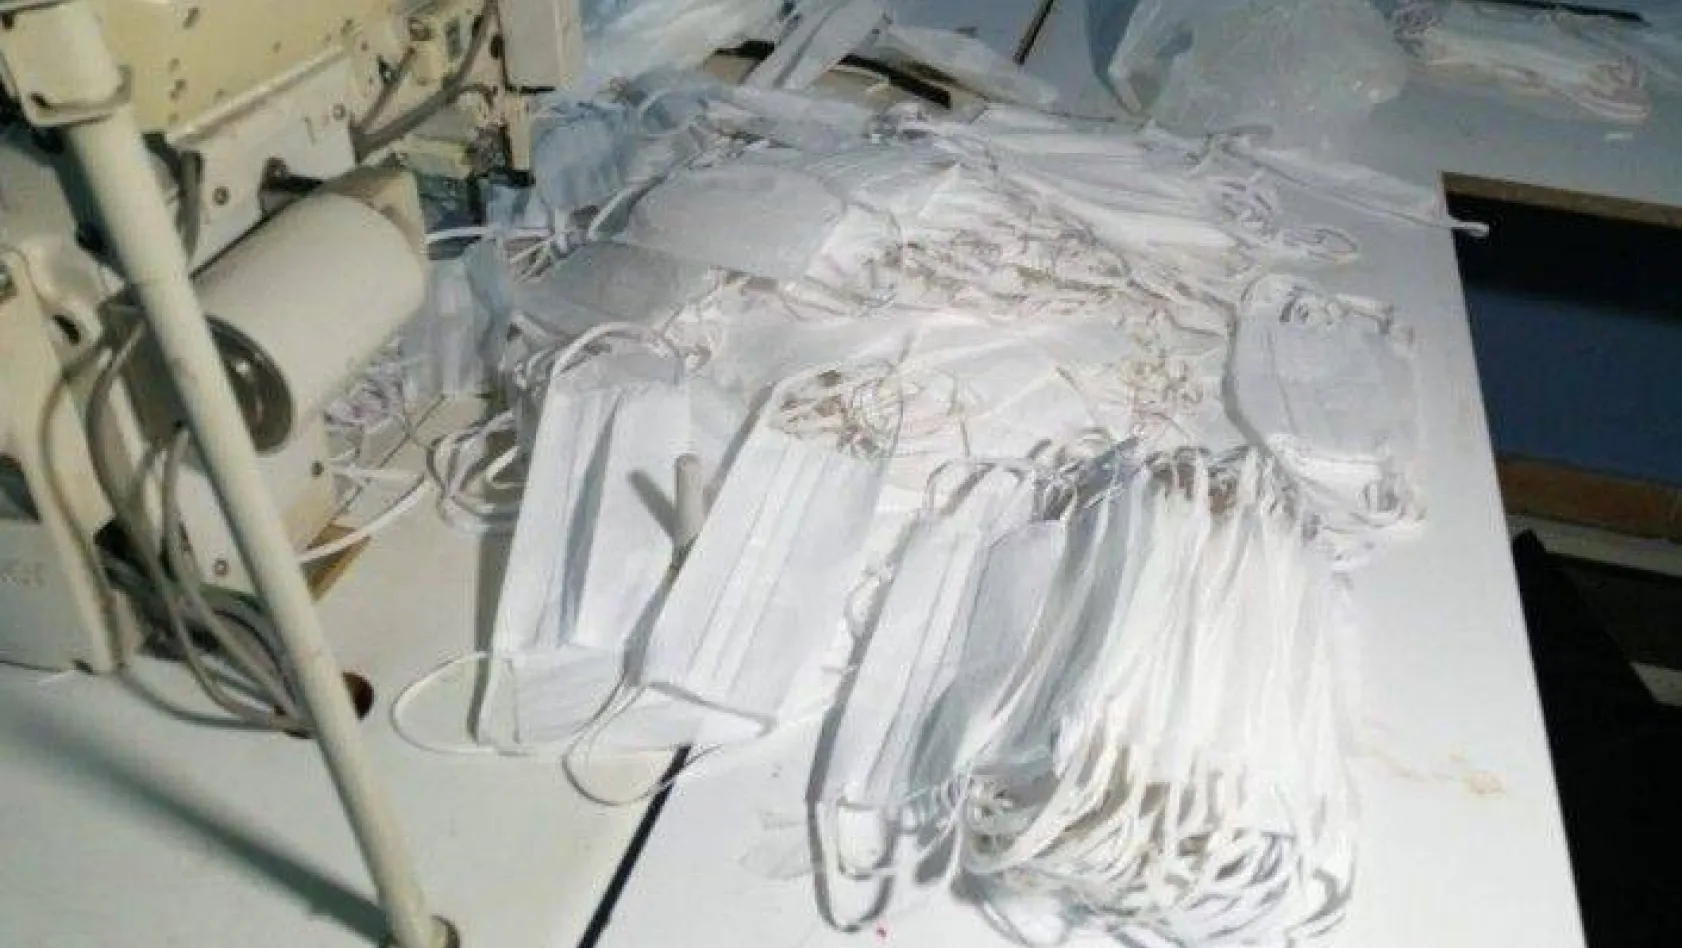 Korona virüs fırsatçılarına baskın: 1 milyon sahte maske ele geçirildi